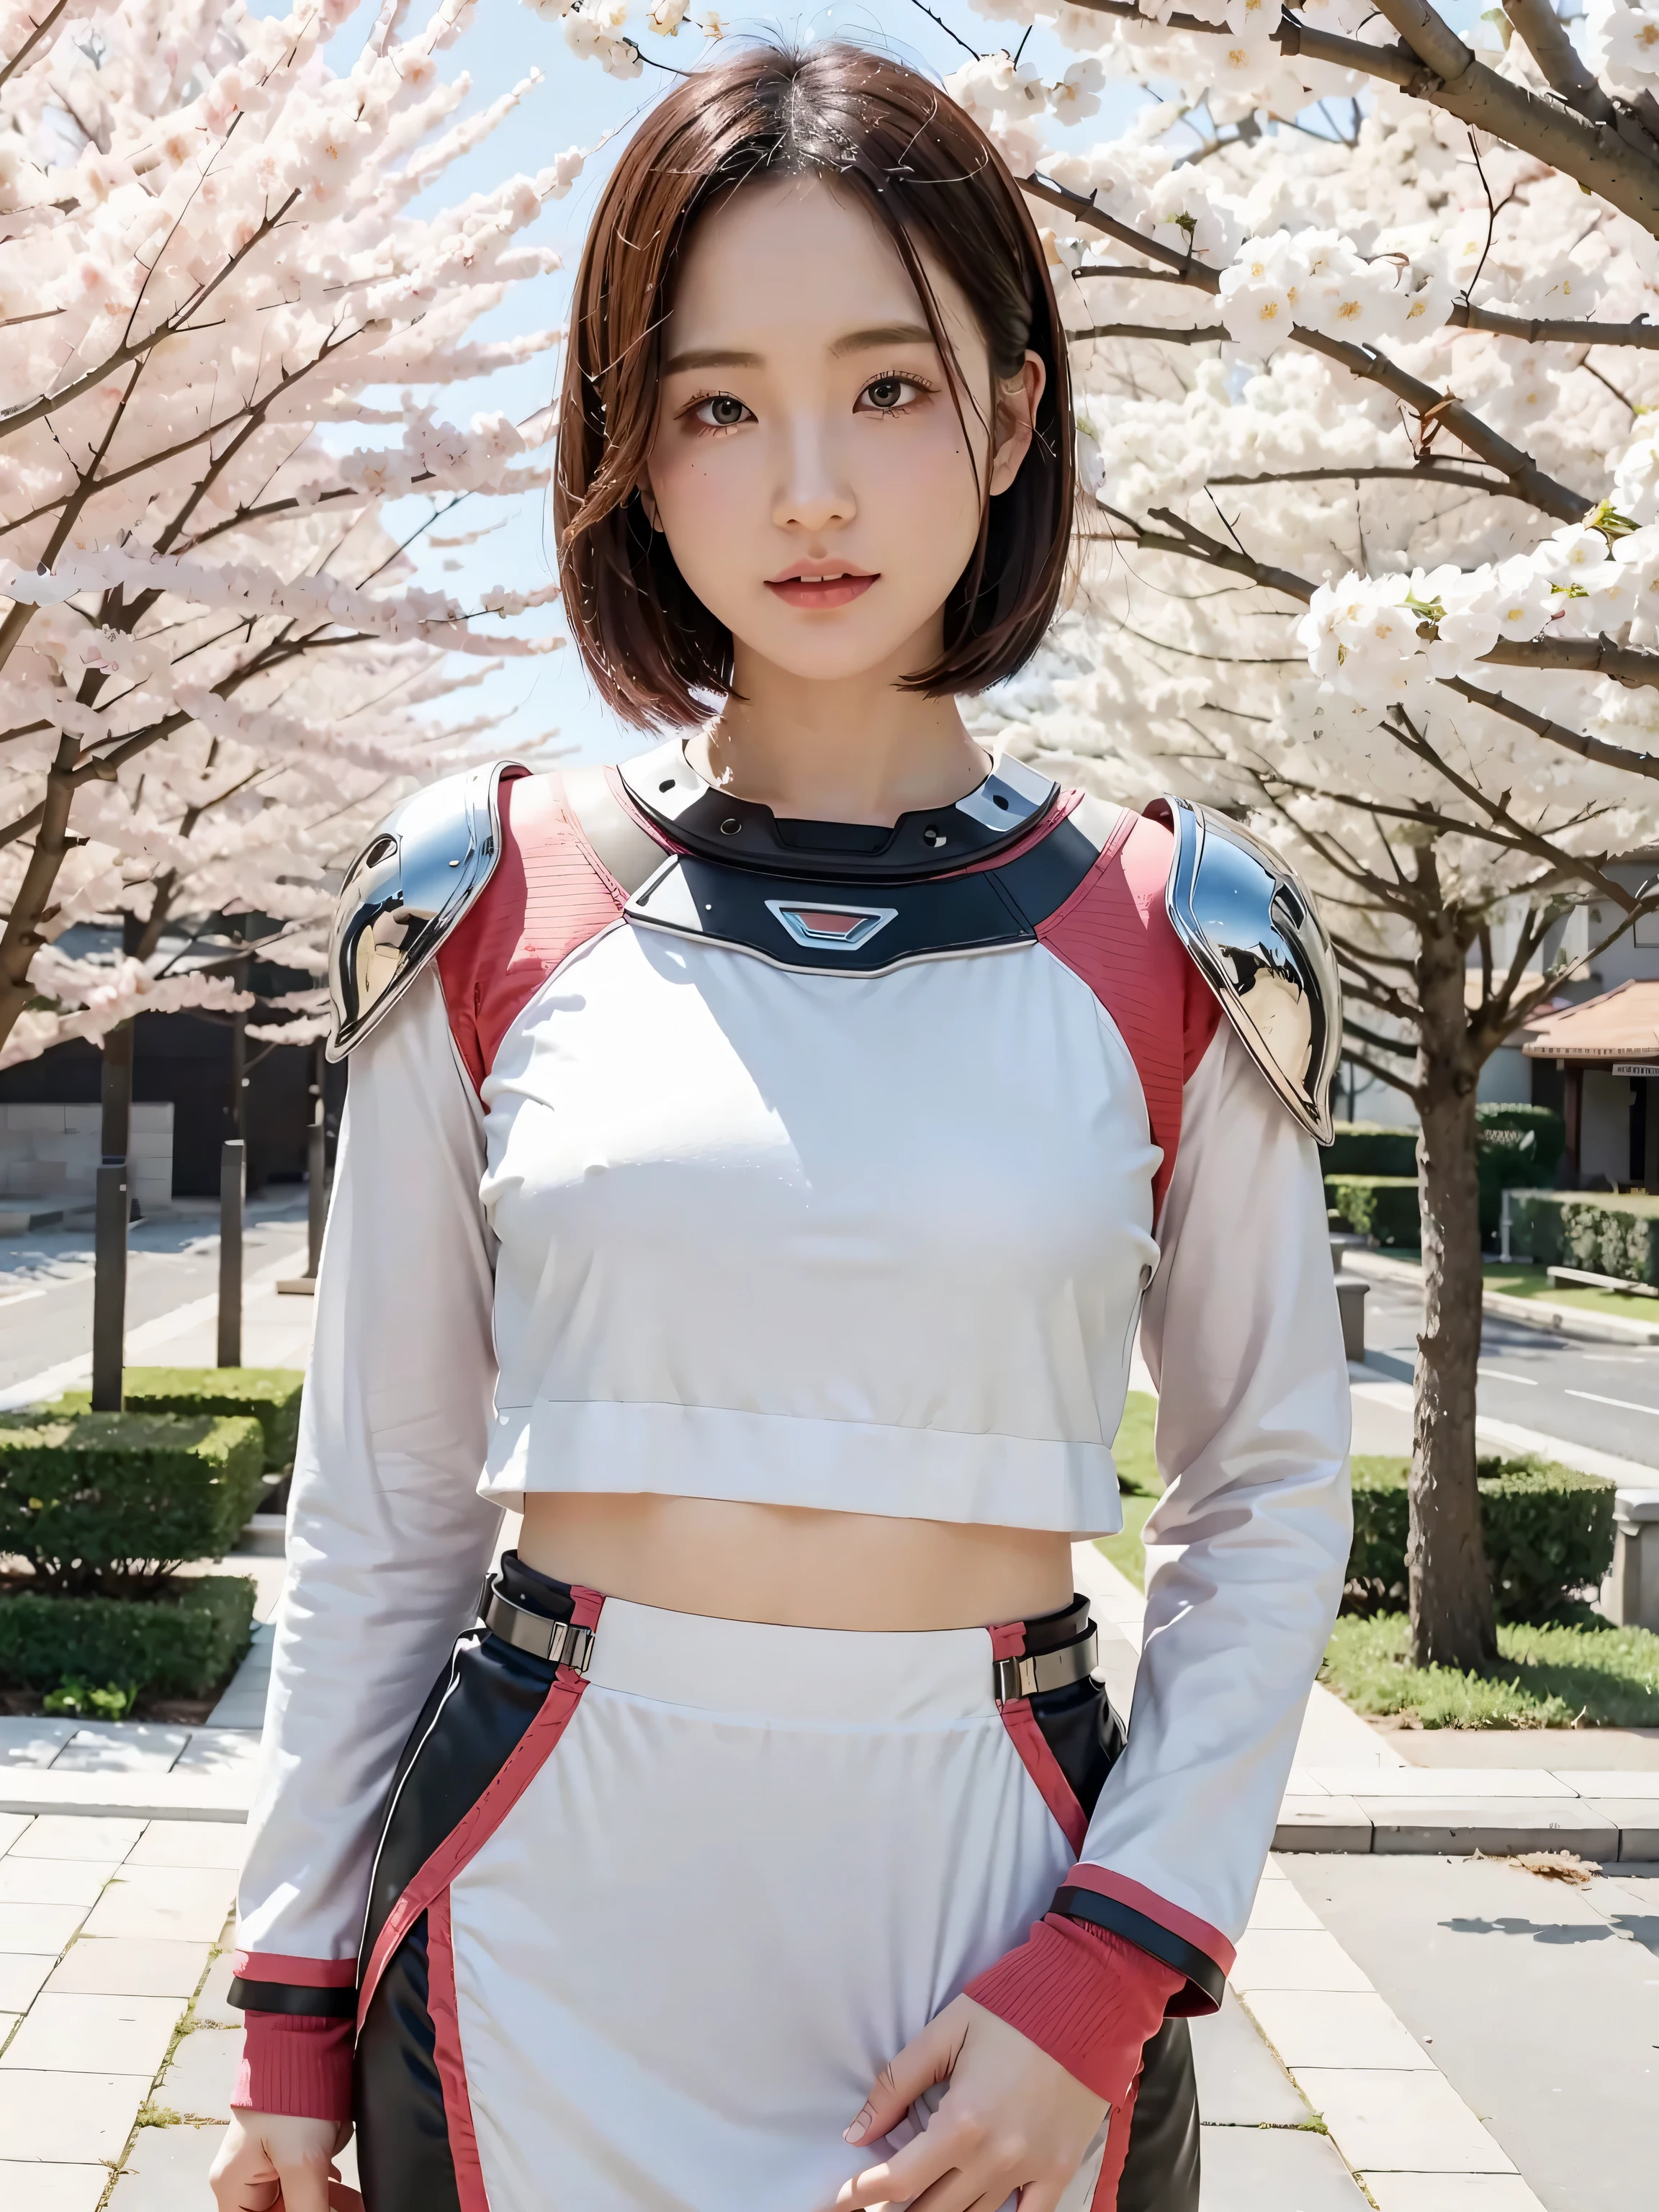 hermosa joven japonesa, usando armadura cyborg, rasgos simétricos gruesos, pelo muy corto, El fondo es flores de cerezo., aura rosada, labios rojos, renderizado de octanaje,